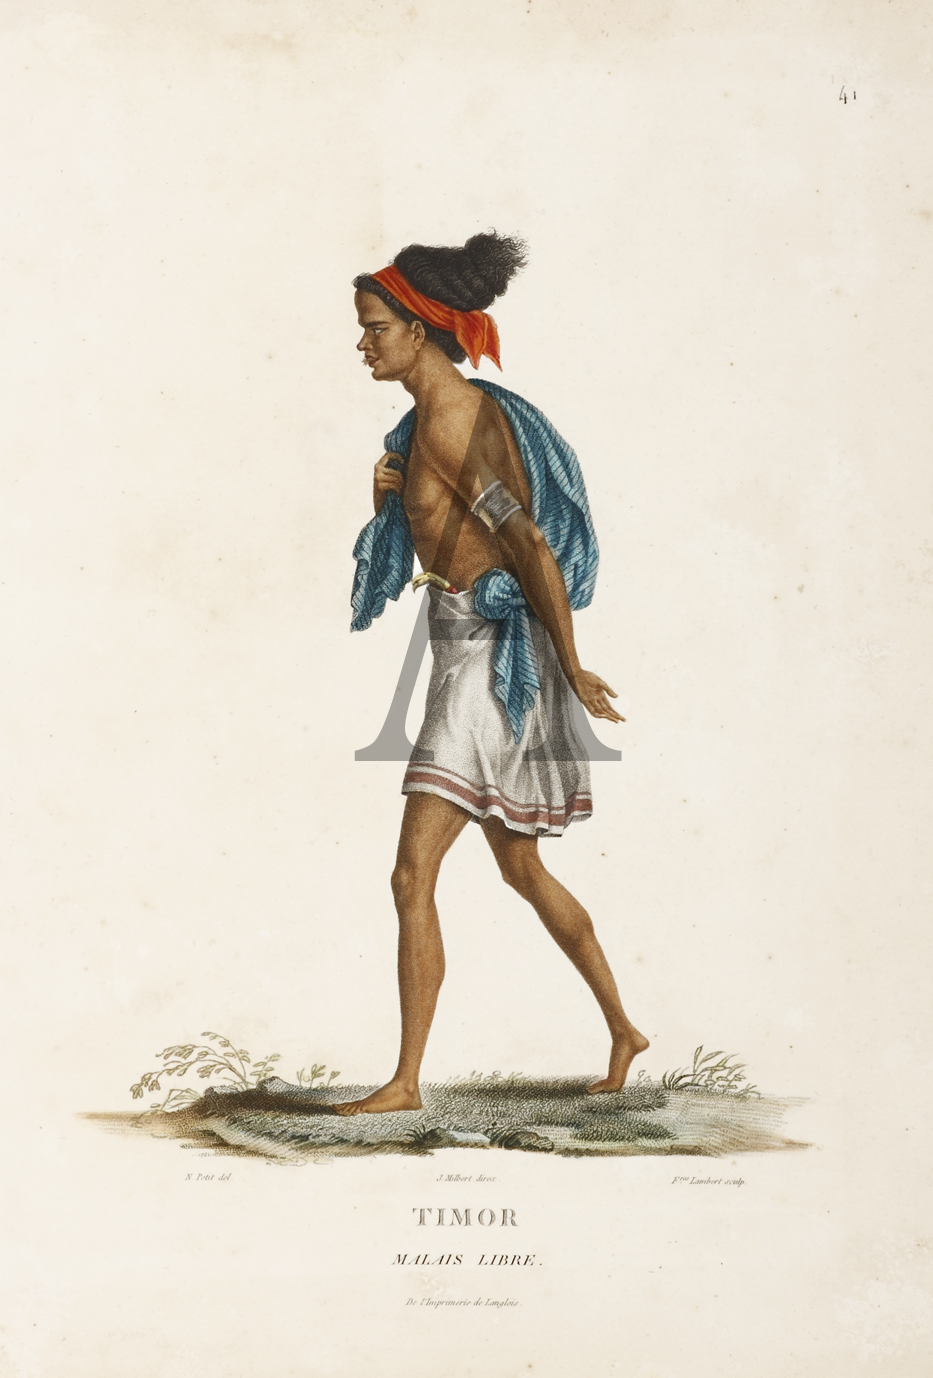 Timor. Malais Libre. - Antique Print from 1807